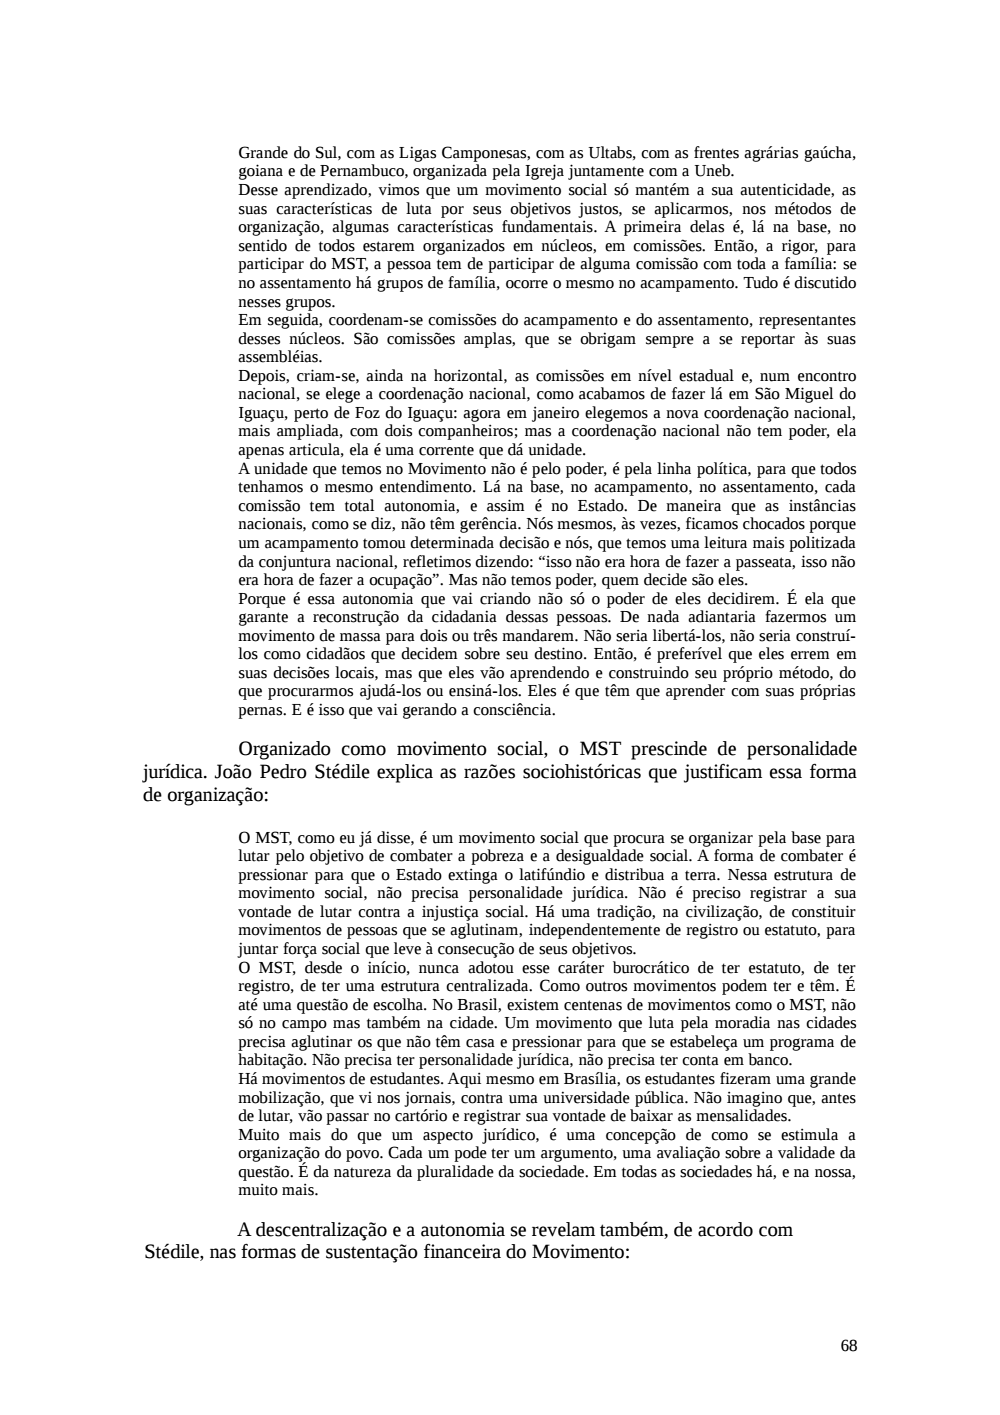 Page 68 from Relatório final da comissão